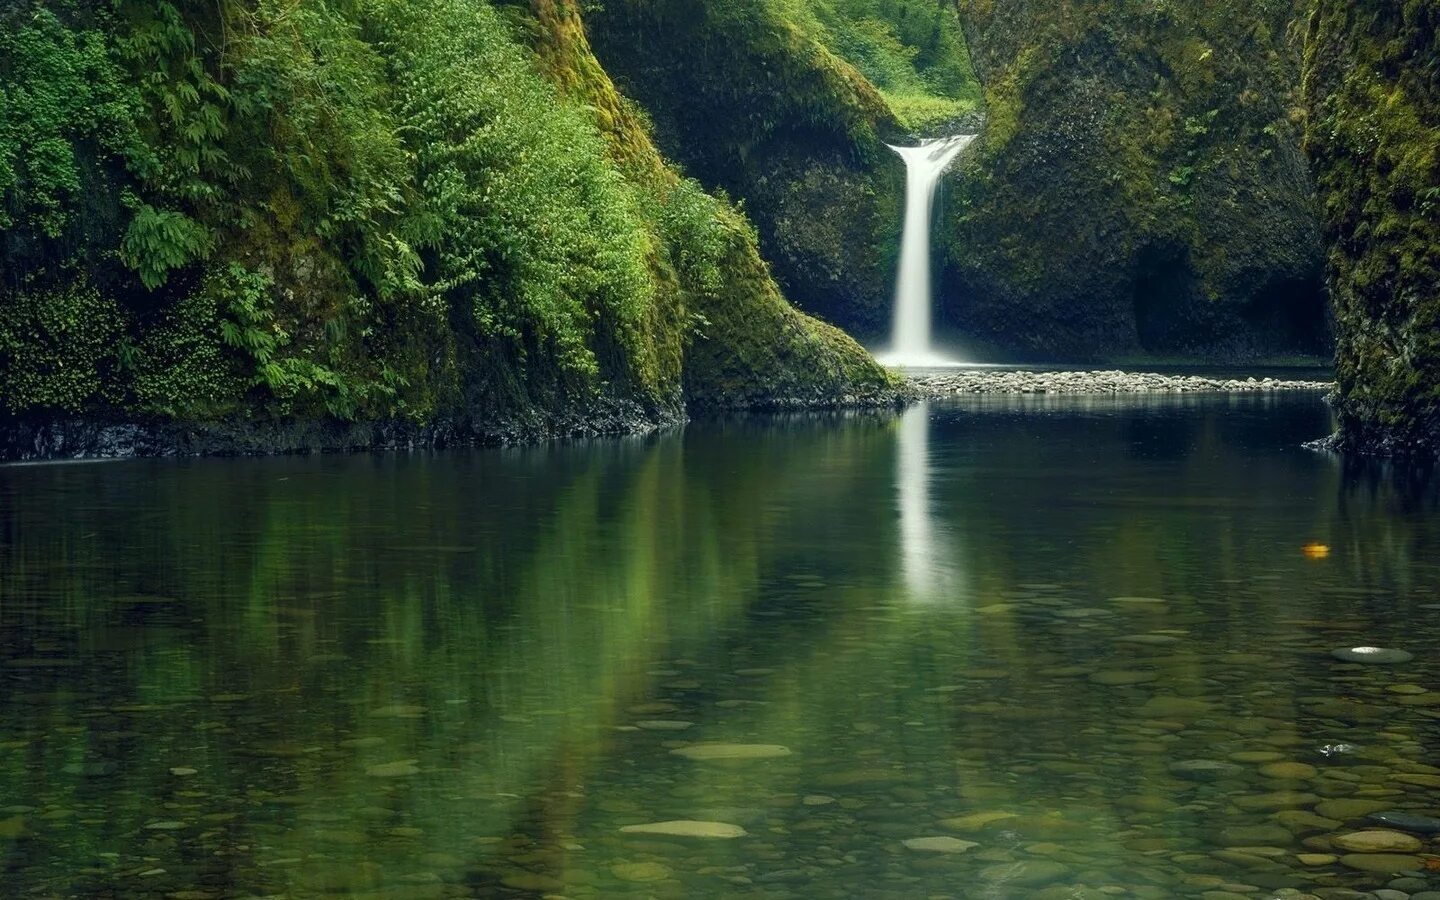 Обои на телефон река. Природа водопад озеро. Река с водопадом. Водный пейзаж. Красивые пейзажи с водой.